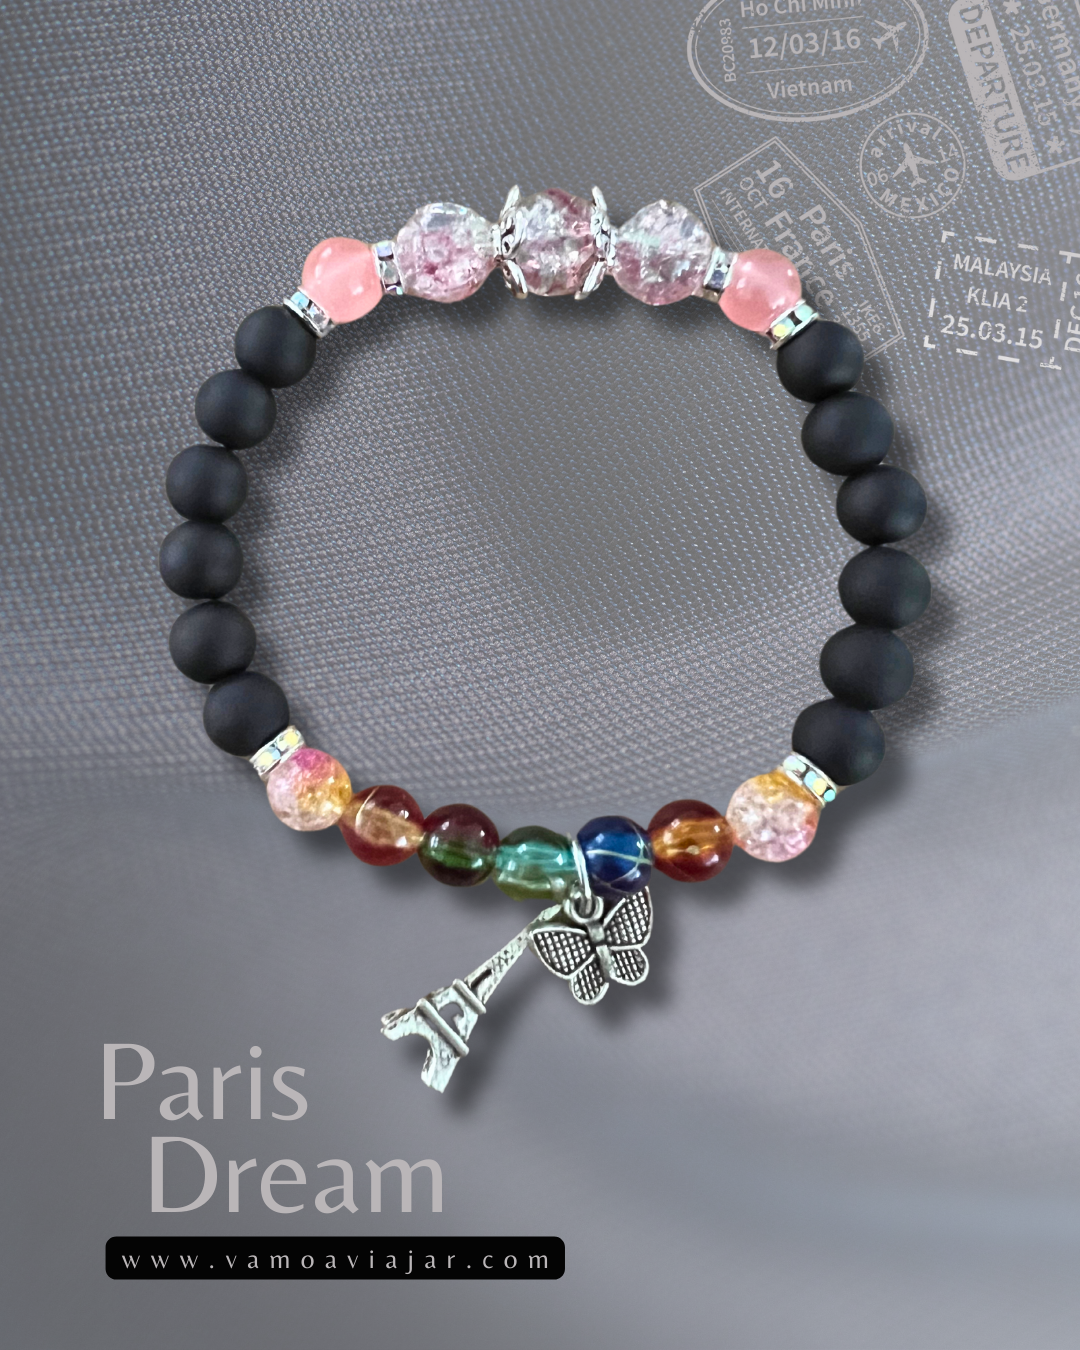 Bracelet: Paris Dream